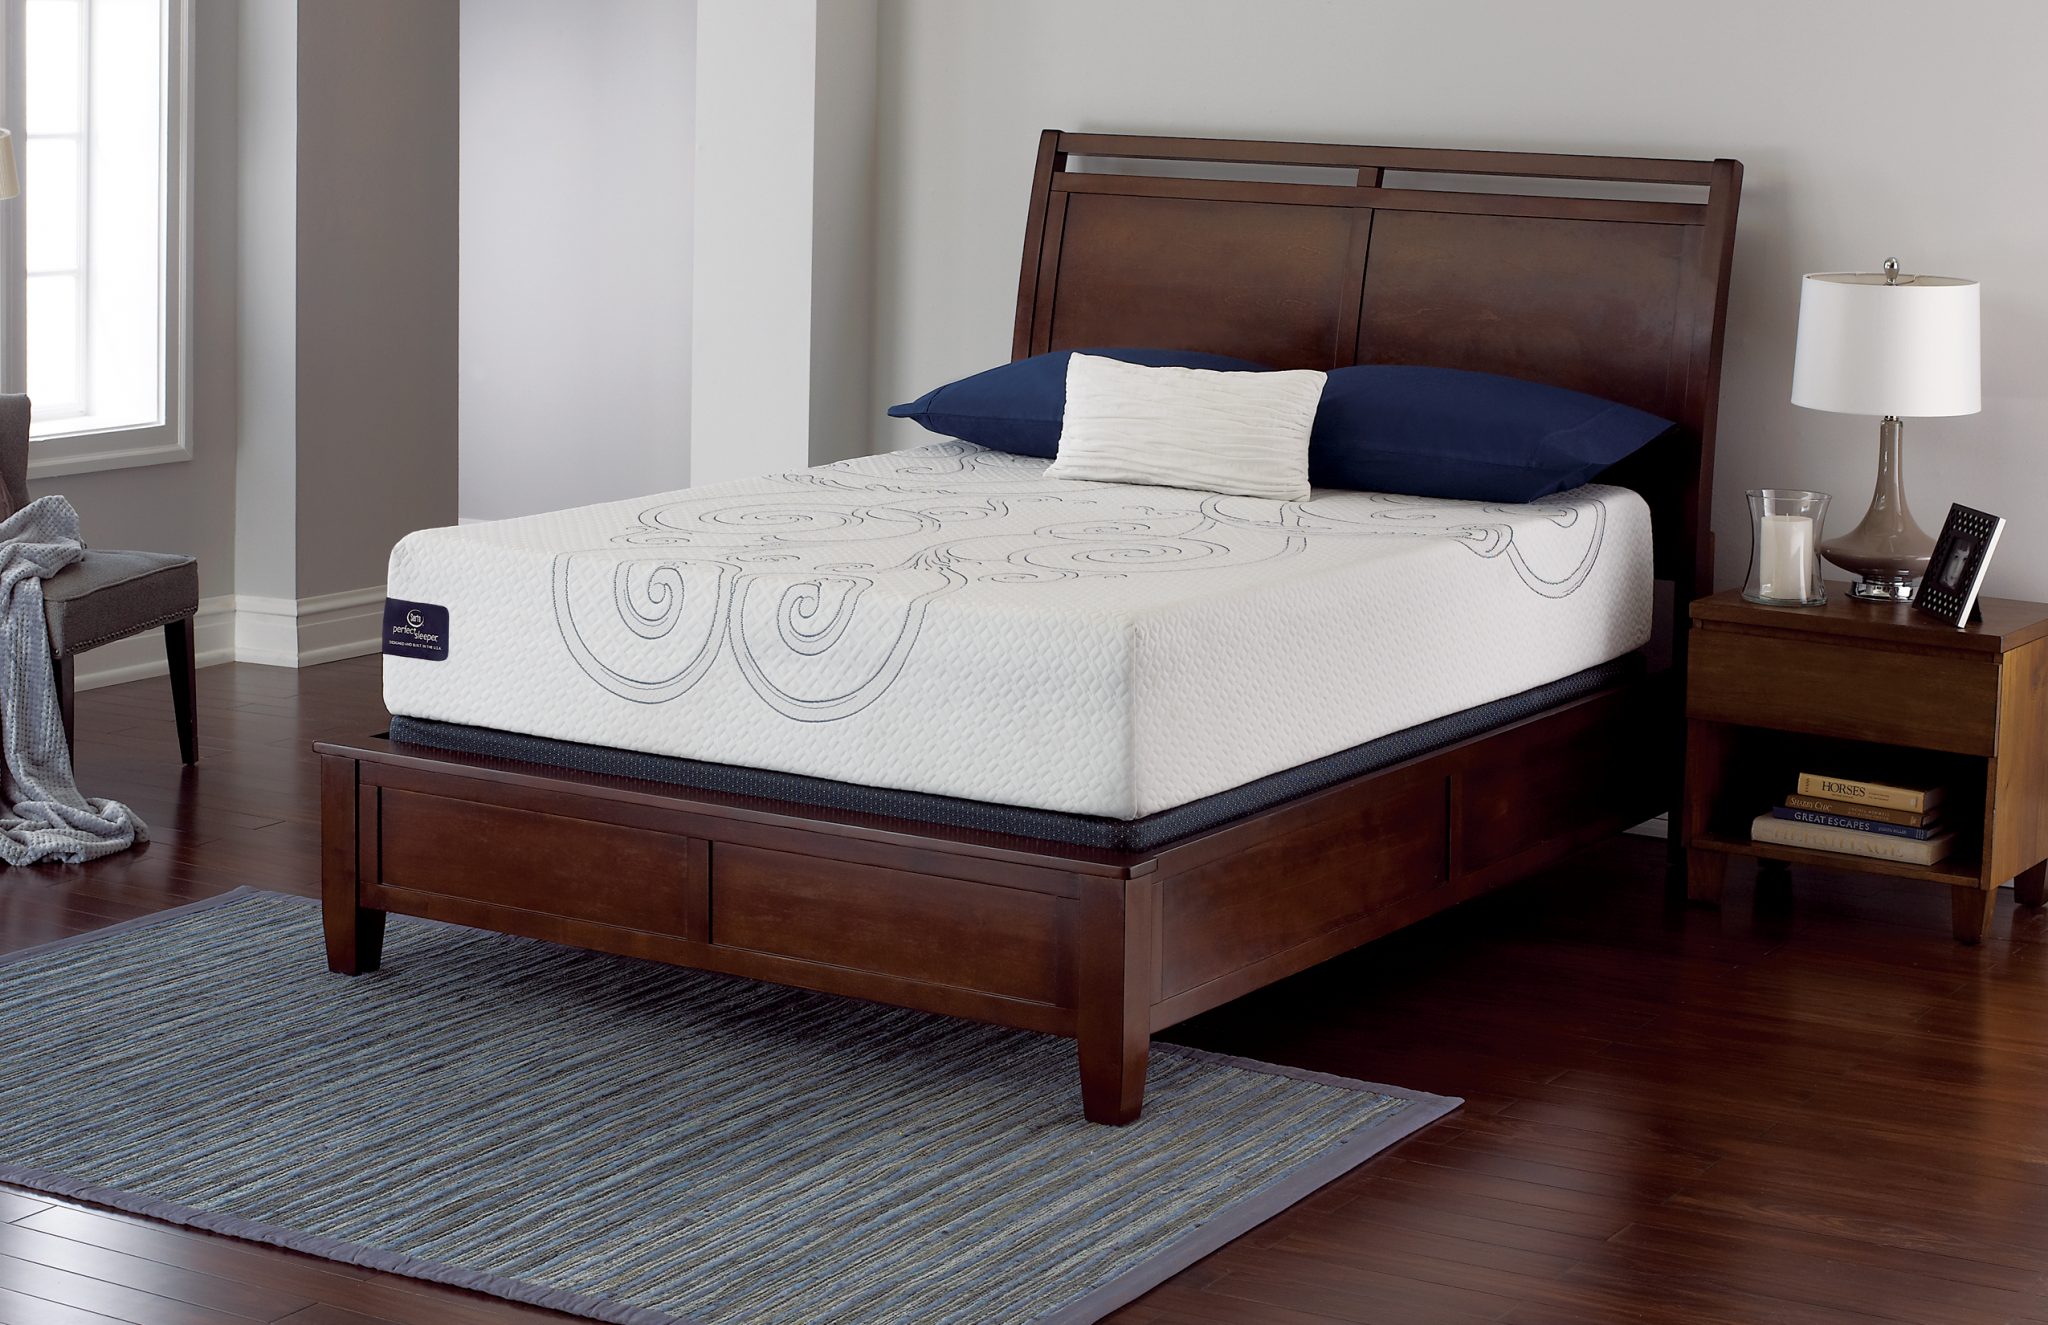 sheraton perfect sleeper mattress